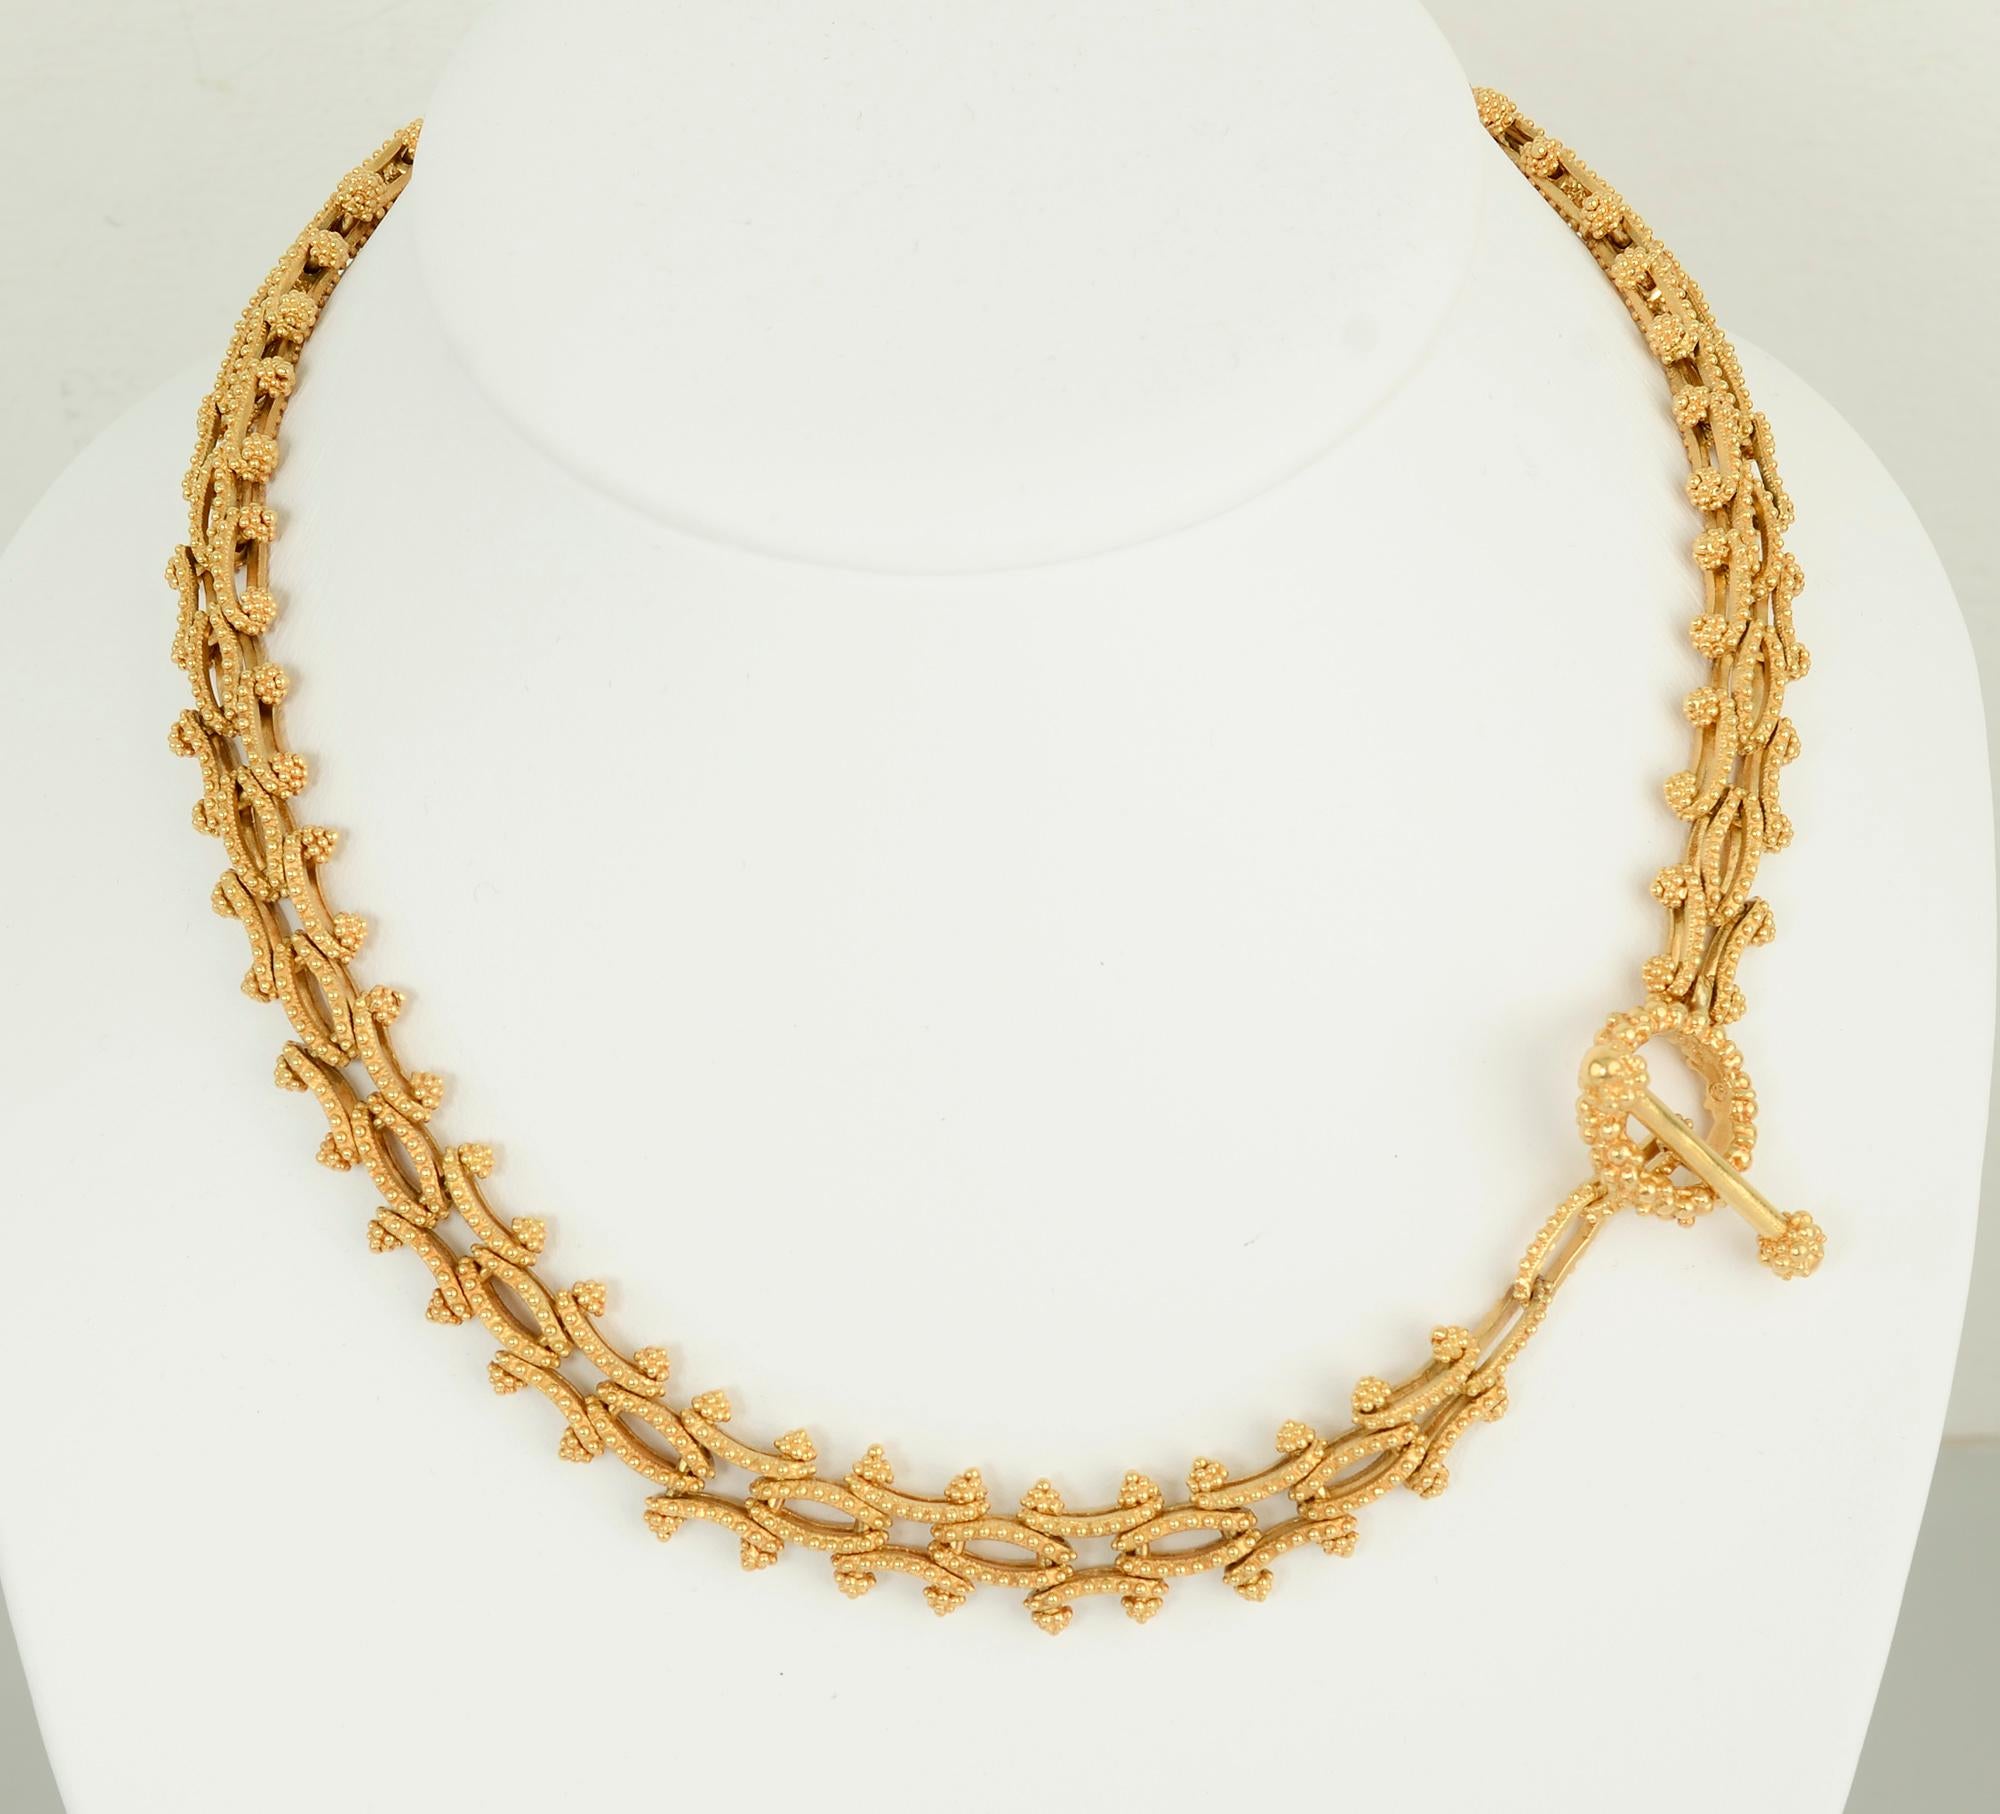 Diese ungewöhnliche Kombination aus Goldgliederkette und Armband ist elegant und vielseitig. Es kann als 18-Zoll-Halskette und 7 3/4-Zoll-Armband getragen oder zu einer langen Halskette kombiniert werden.
Die Glieder sind sowohl konkav als auch